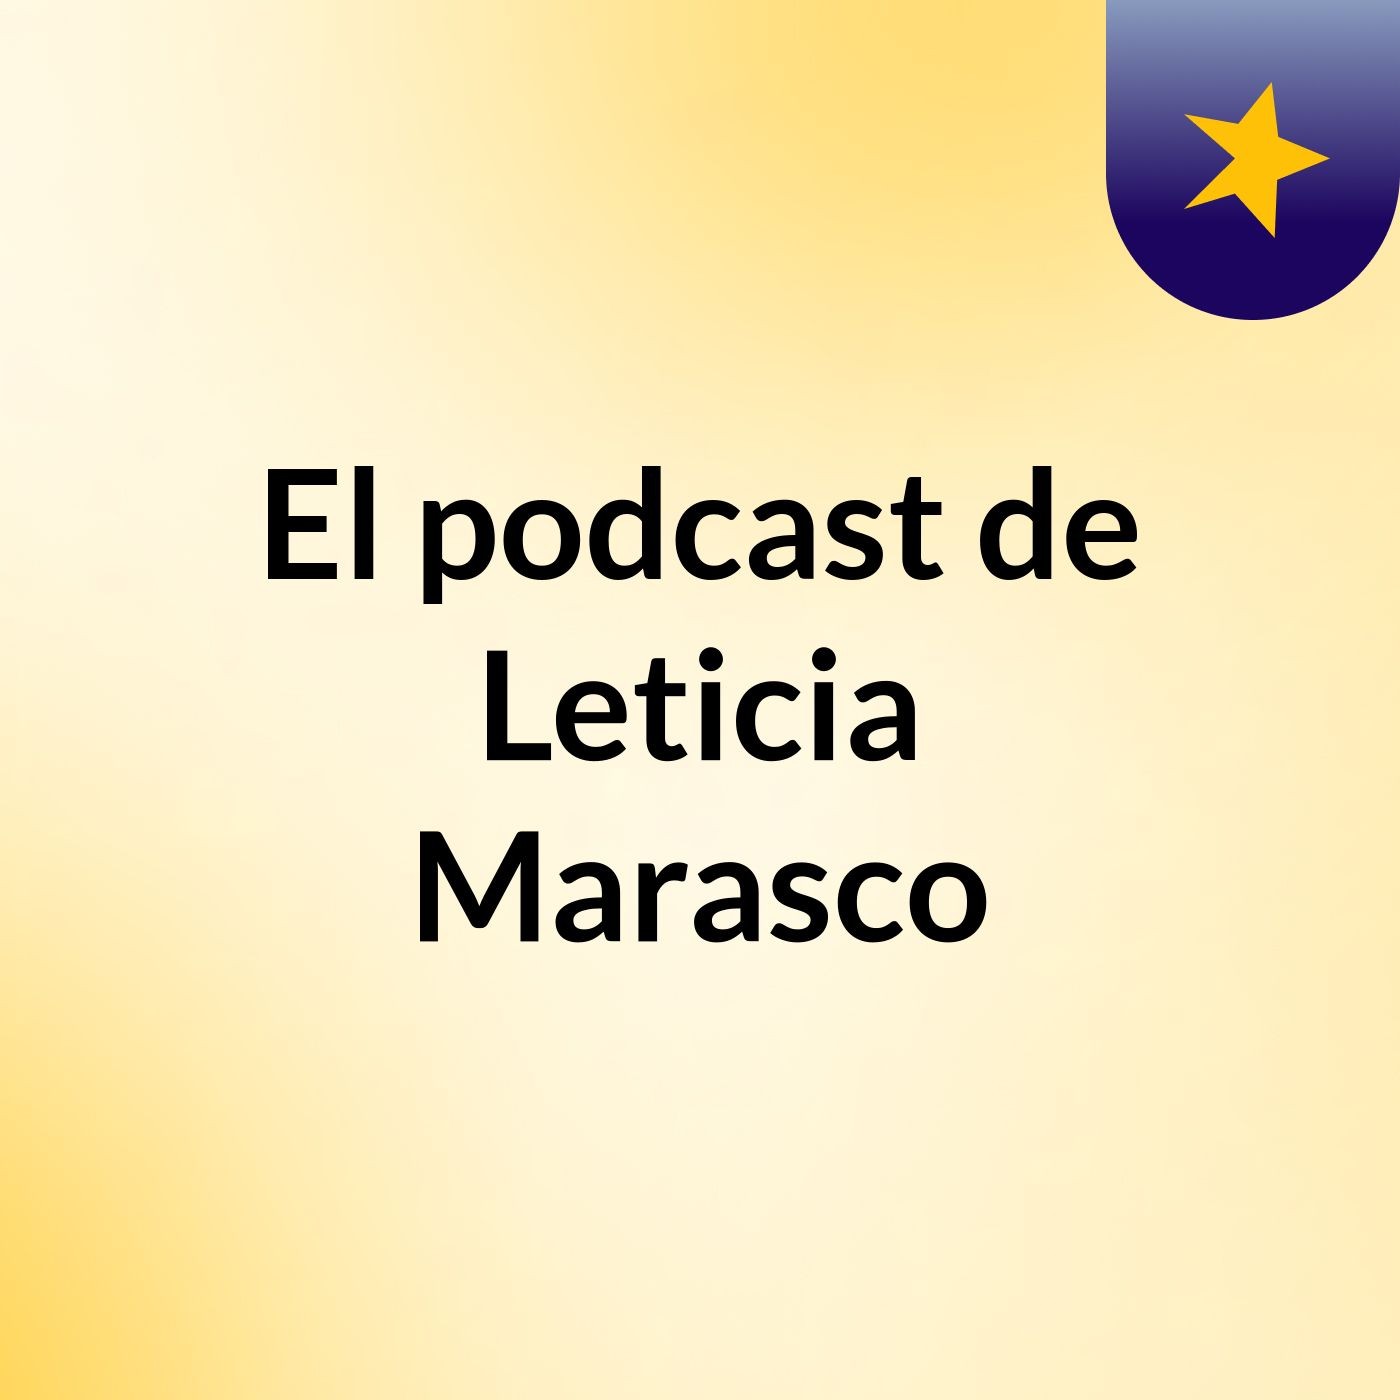 El podcast de Leticia Marasco